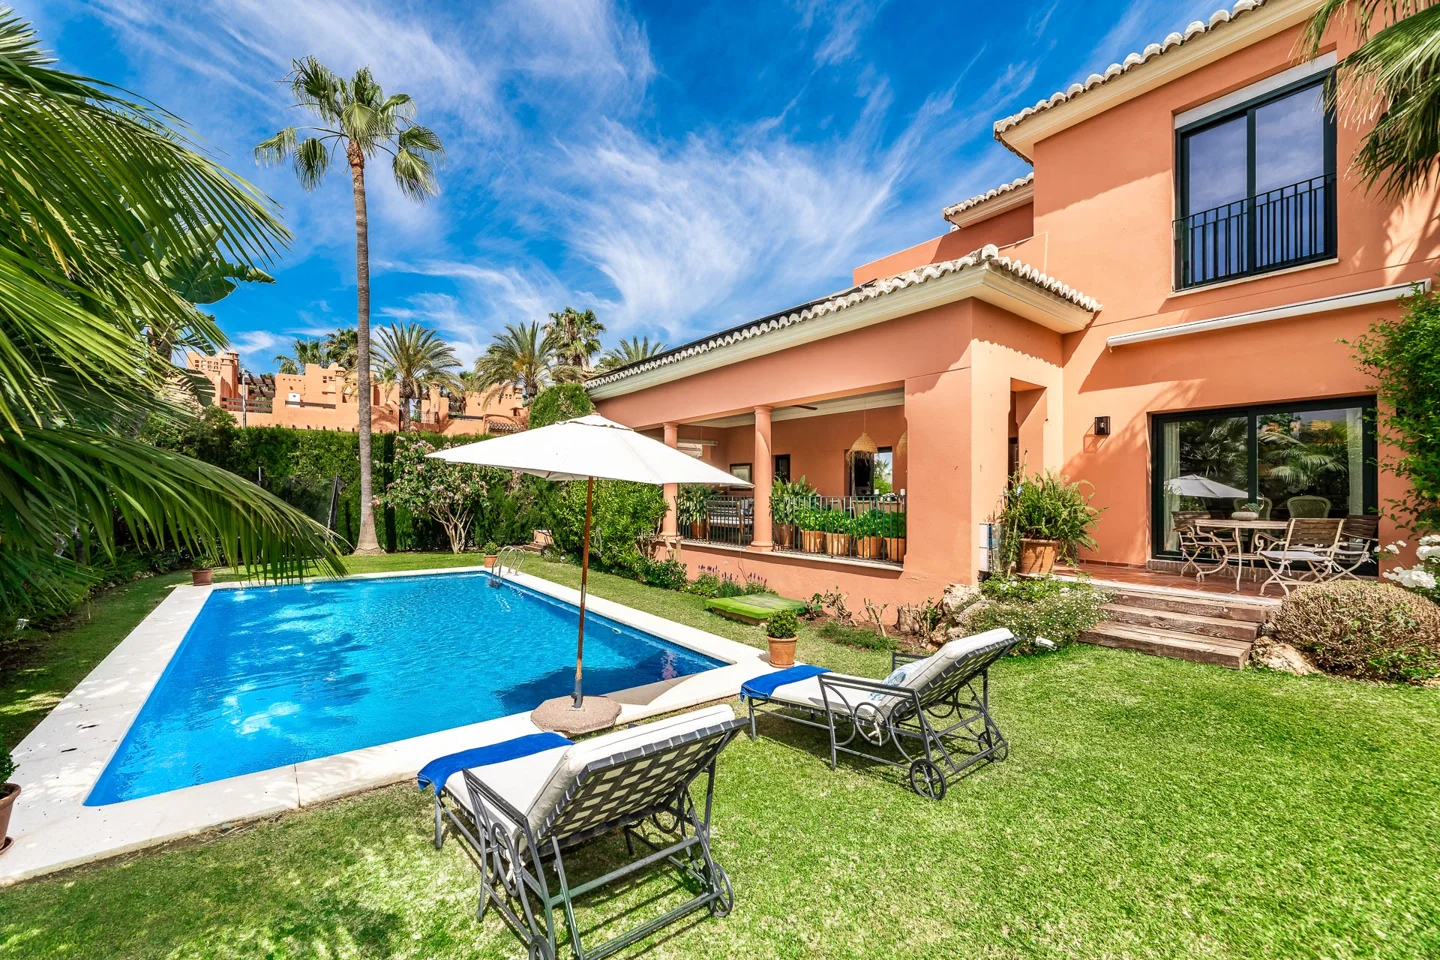 Family Villa in Altos de Puente Romano. Price from €15,000 per week